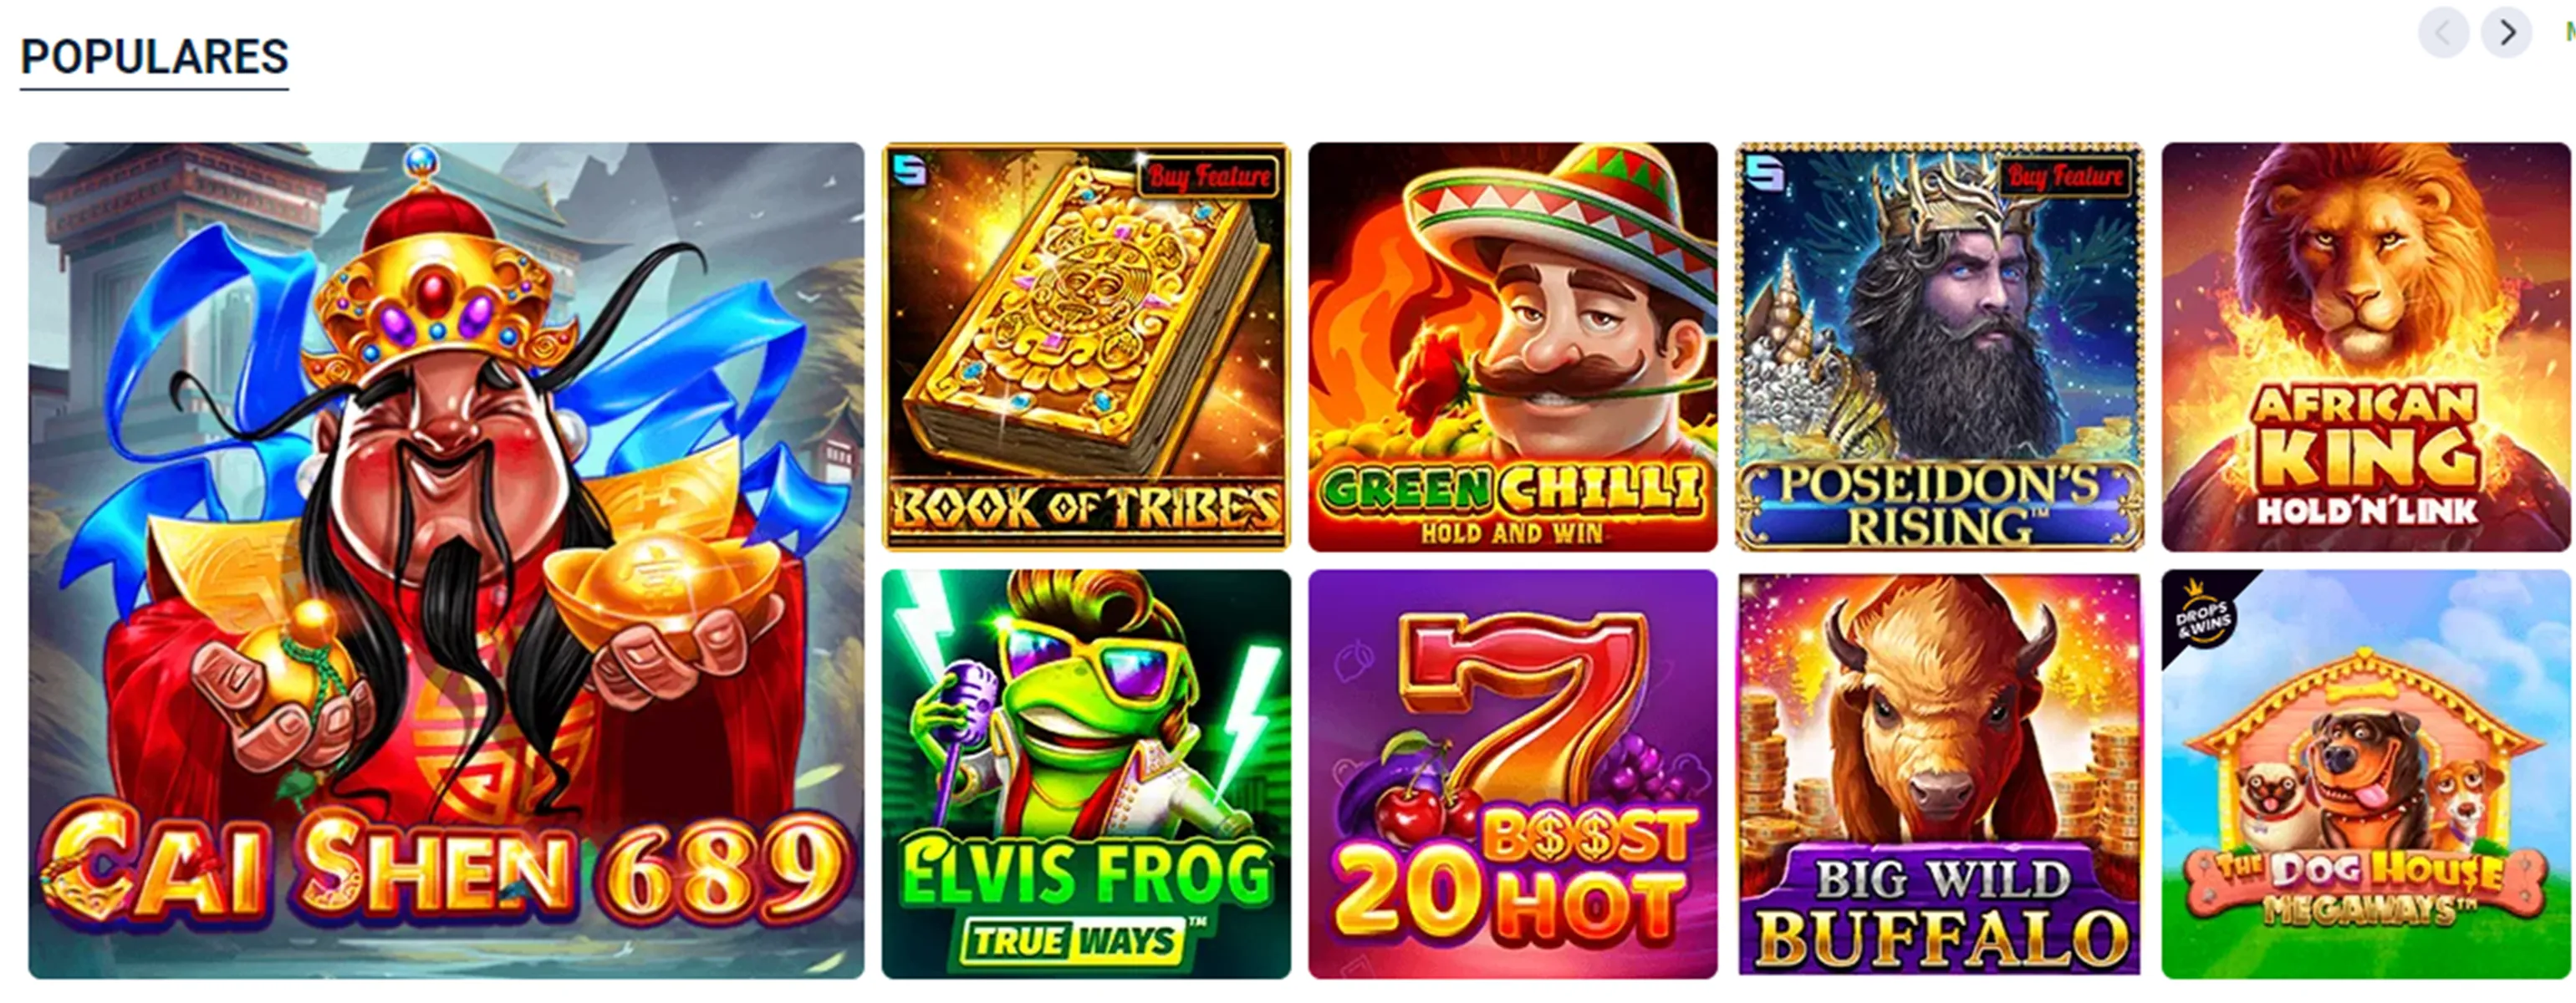 Páginas de apps de casinos